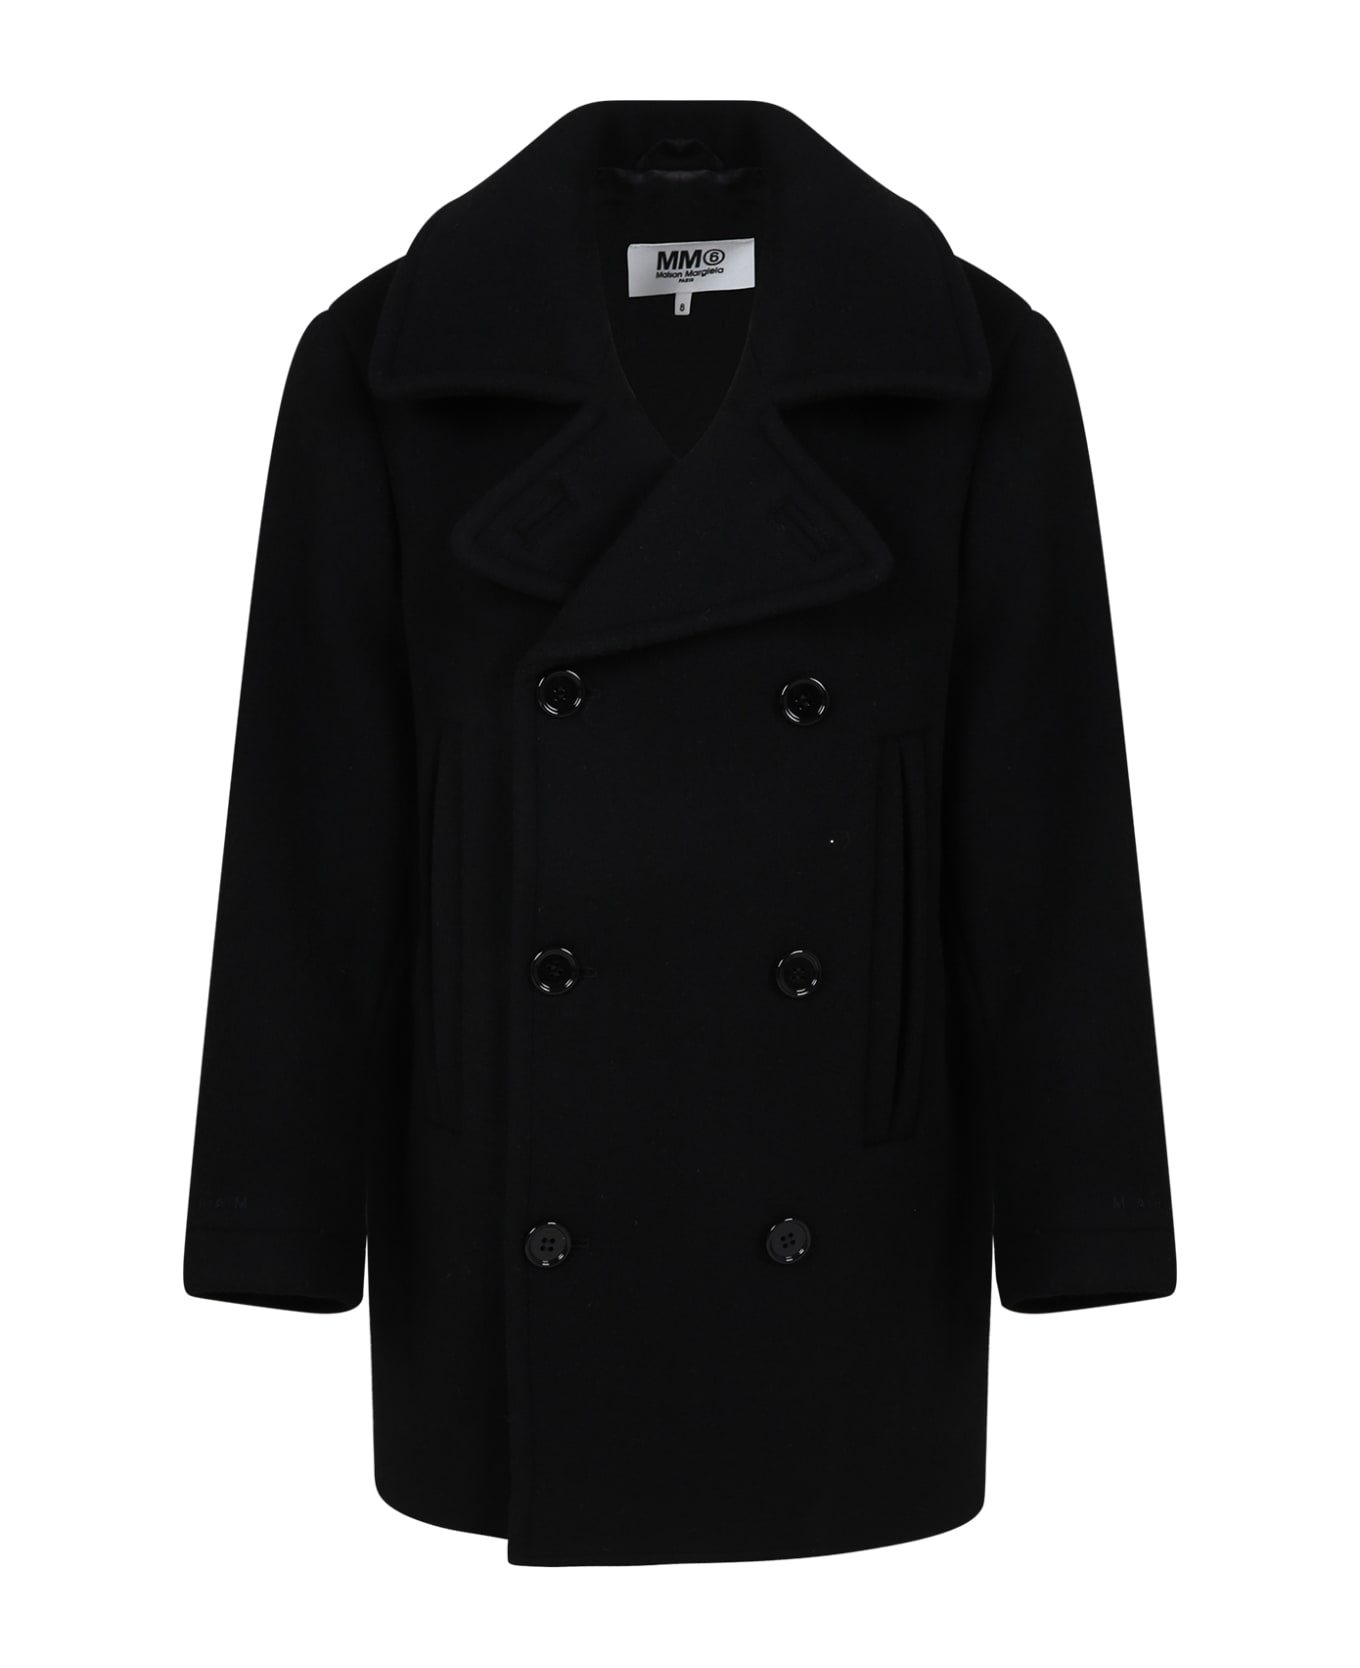 MM6 Maison Margiela Black Coat For Boy With Logo - Black